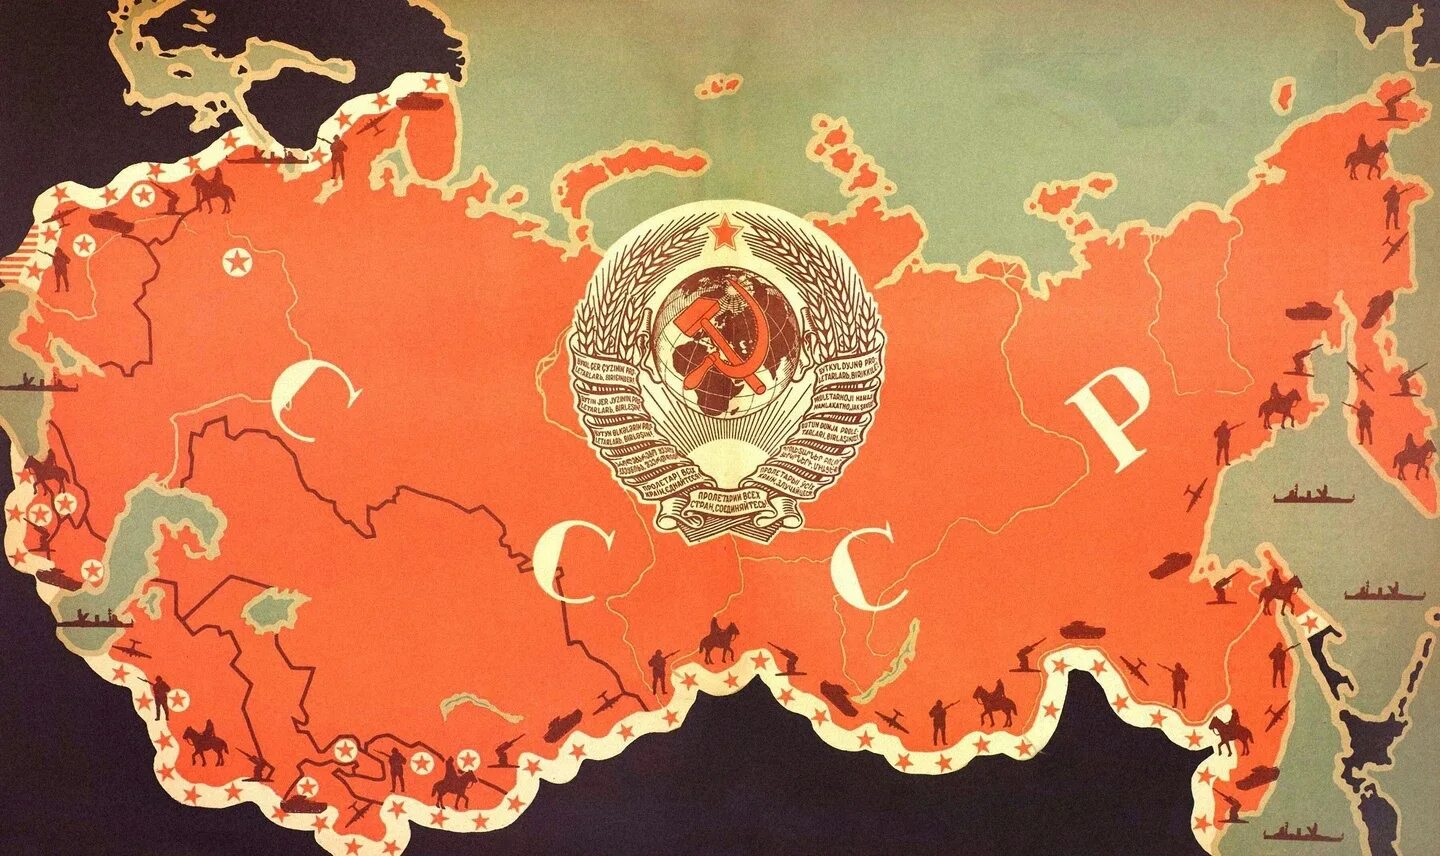 Карта советского Союза. Земли СССР на карте. Карта советского Союза при Сталине. Границы советского Союза СССР. Советского союза 1940 год